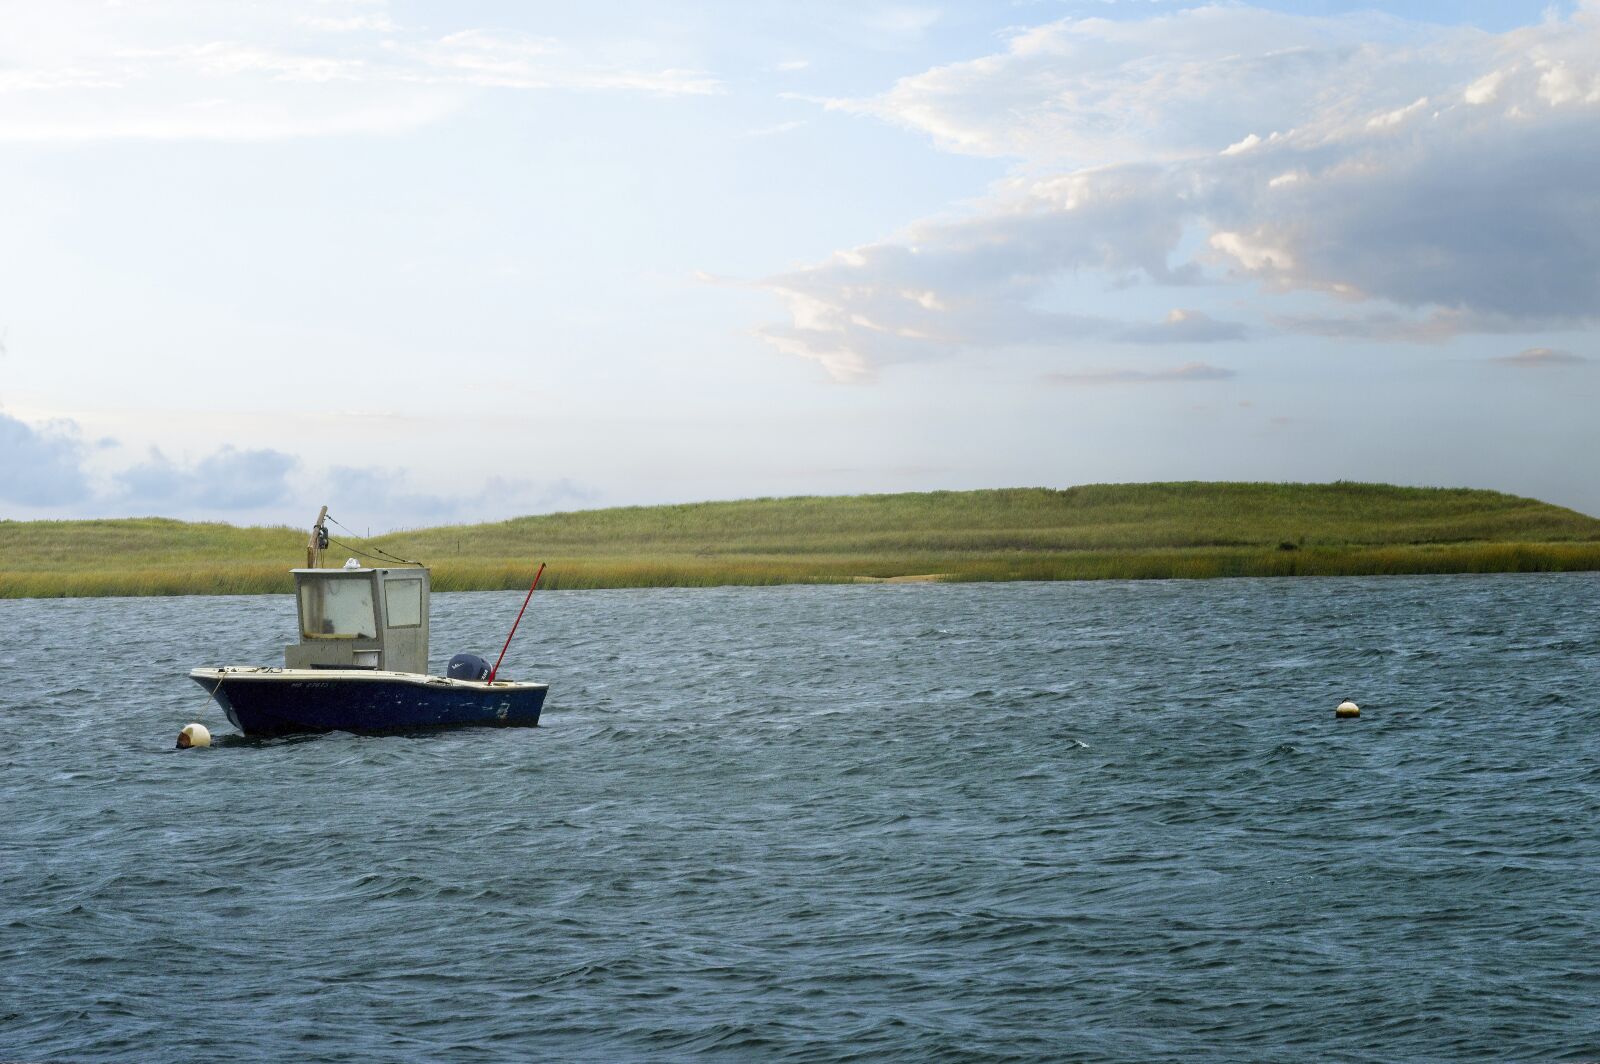 Nikon AF-S DX Nikkor 55-300mm F4.5-5.6G ED VR sample photo. Boat, sea, water photography